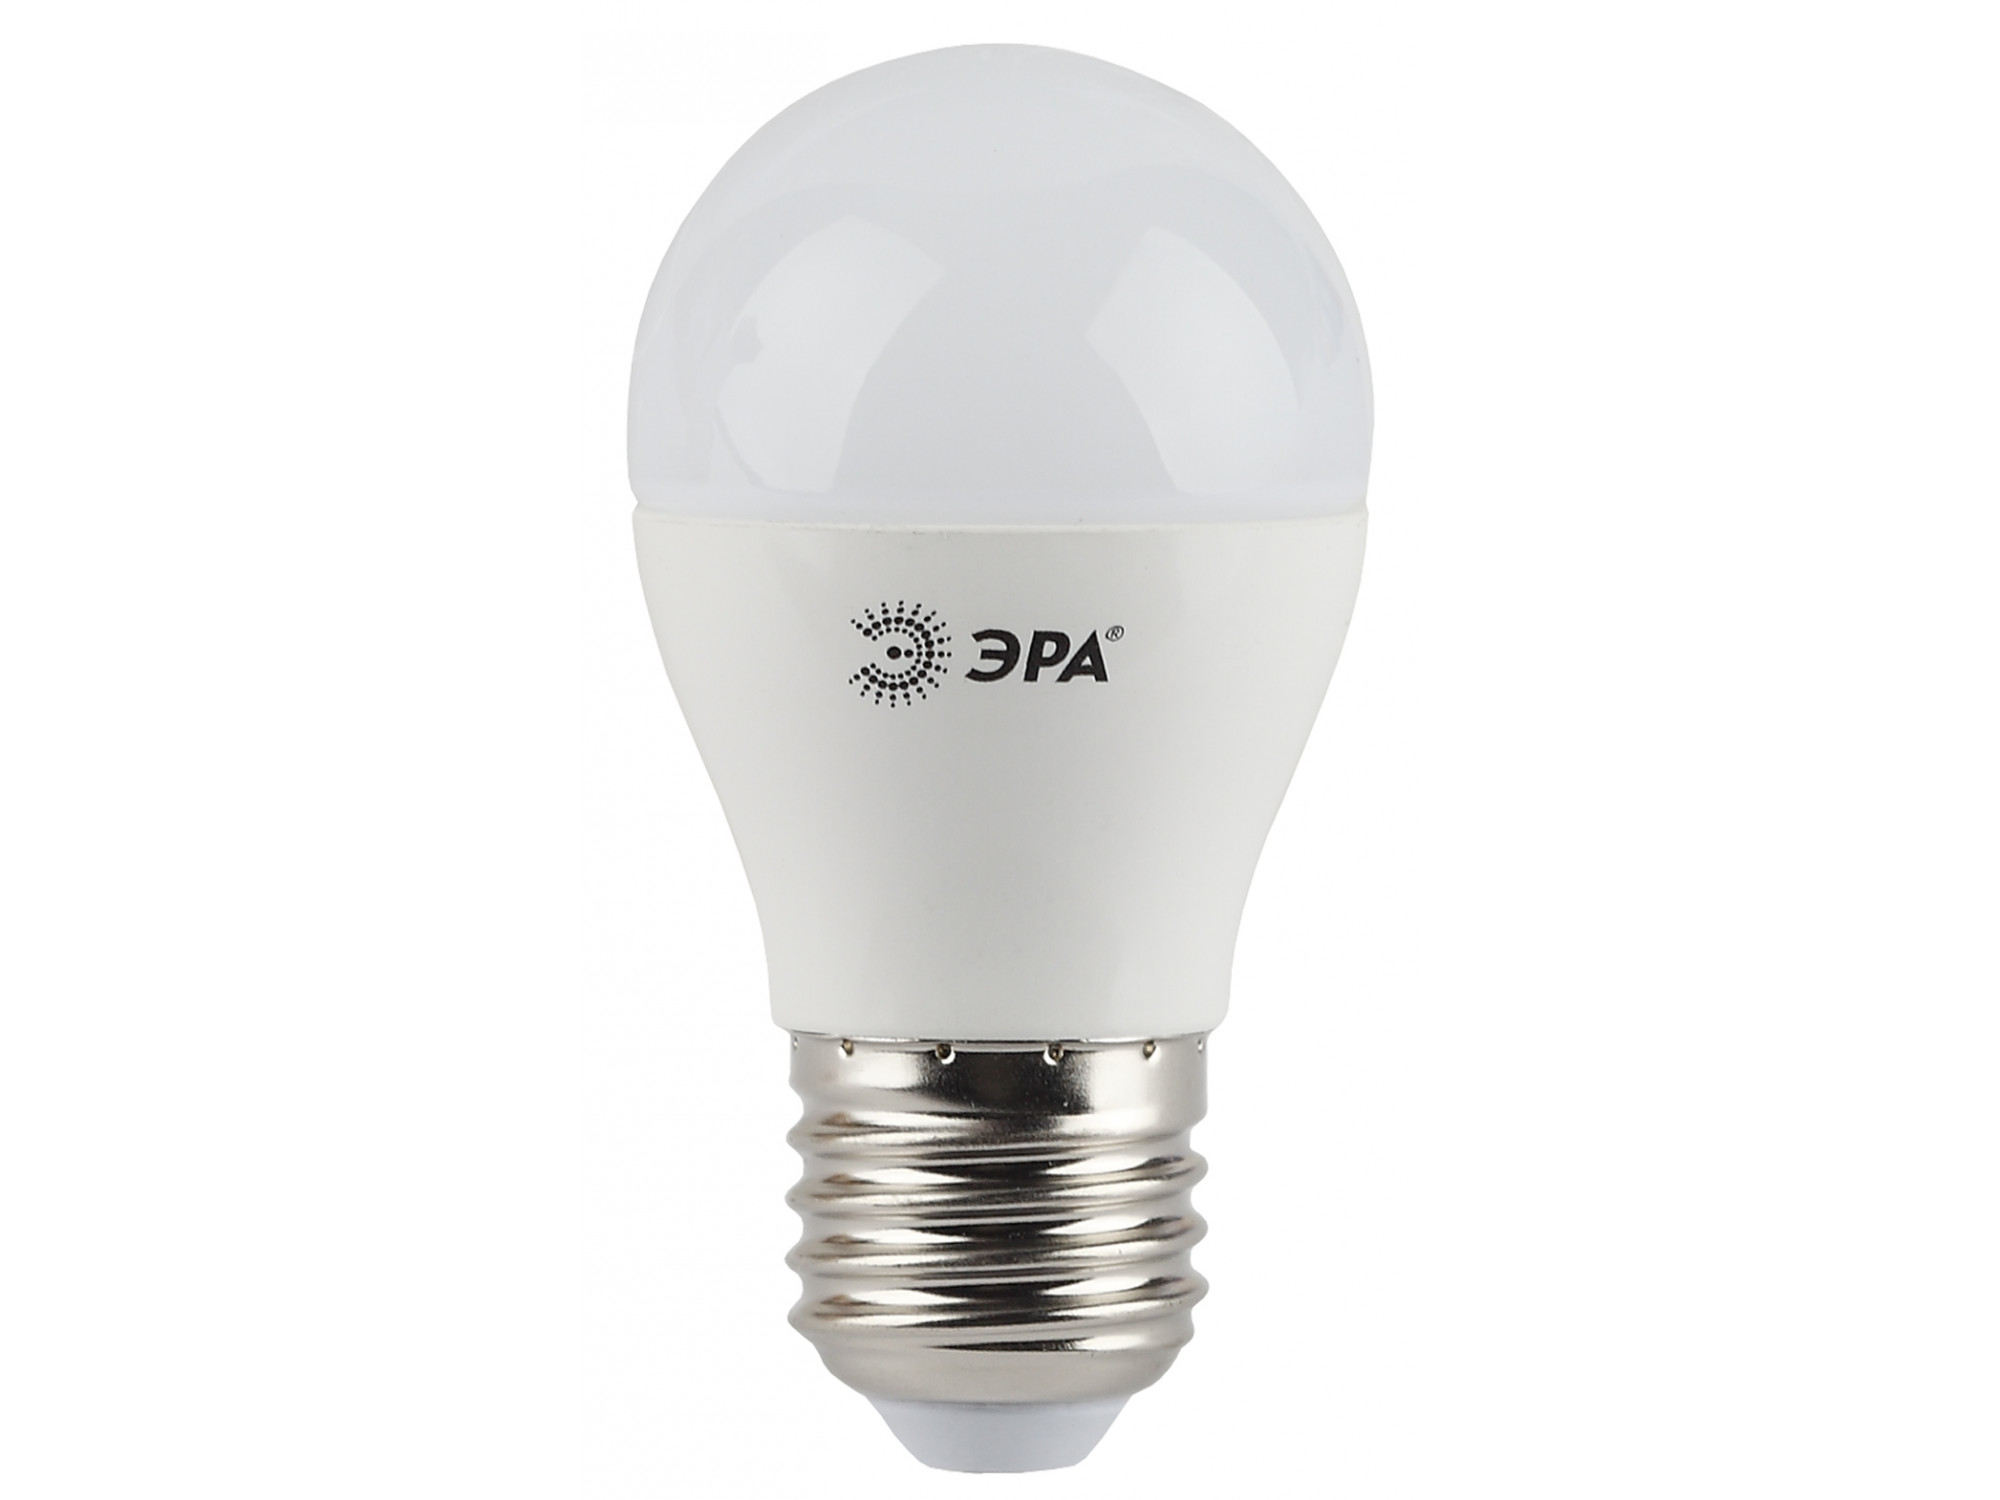 լամպ ERA LED P45-5W-840-E27 